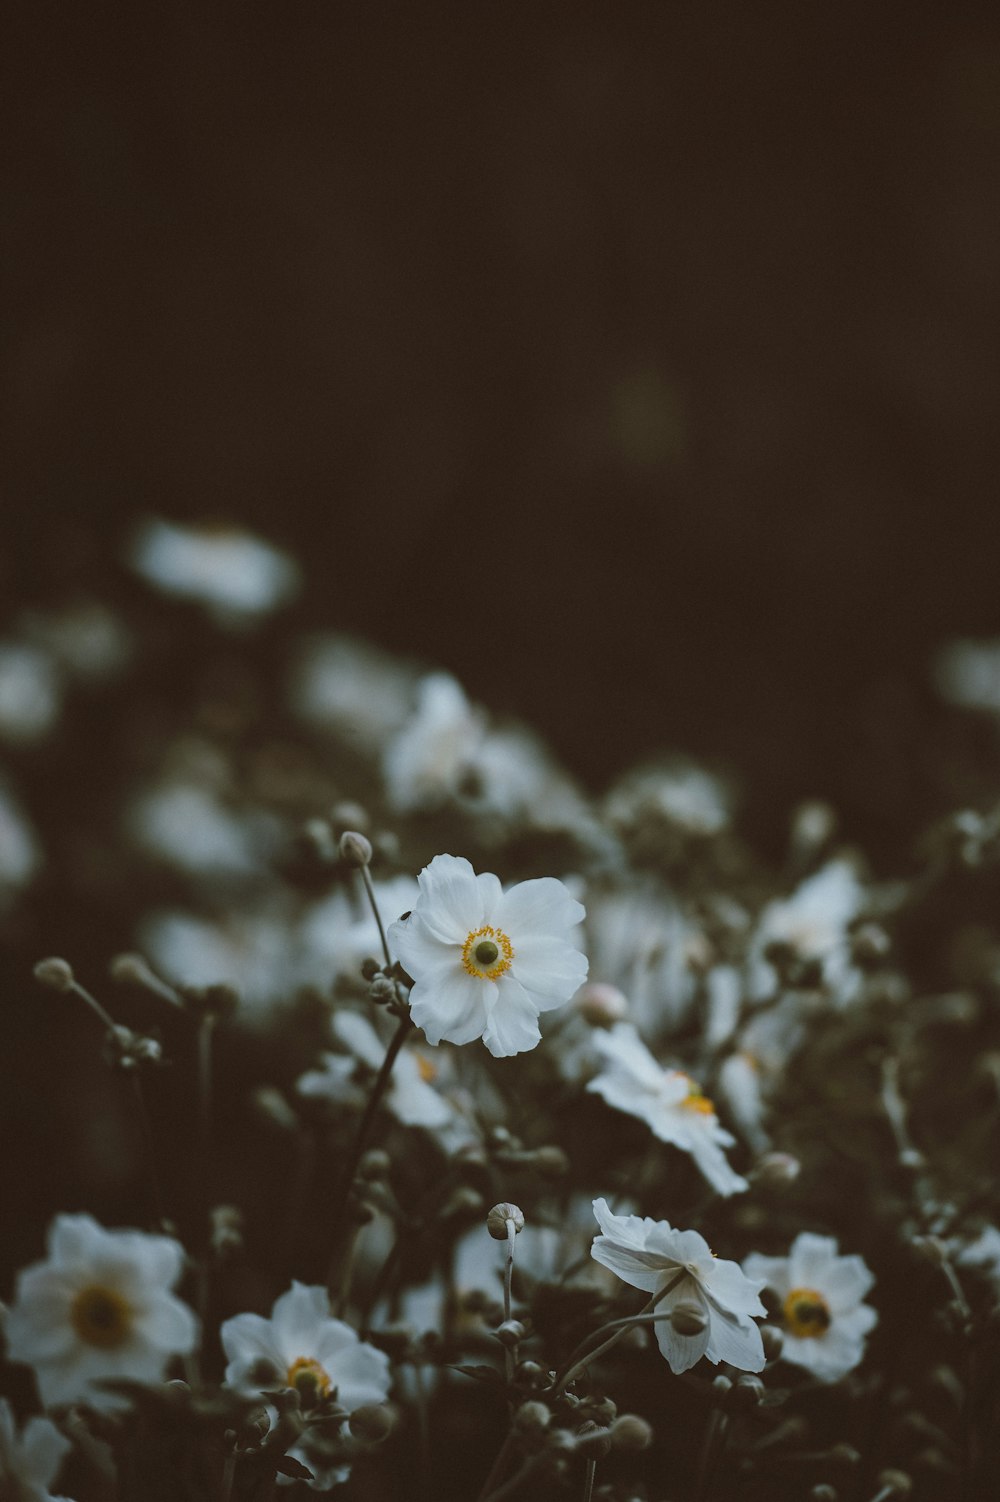 白い花びらに咲いた花のセレクティブフォーカス写真